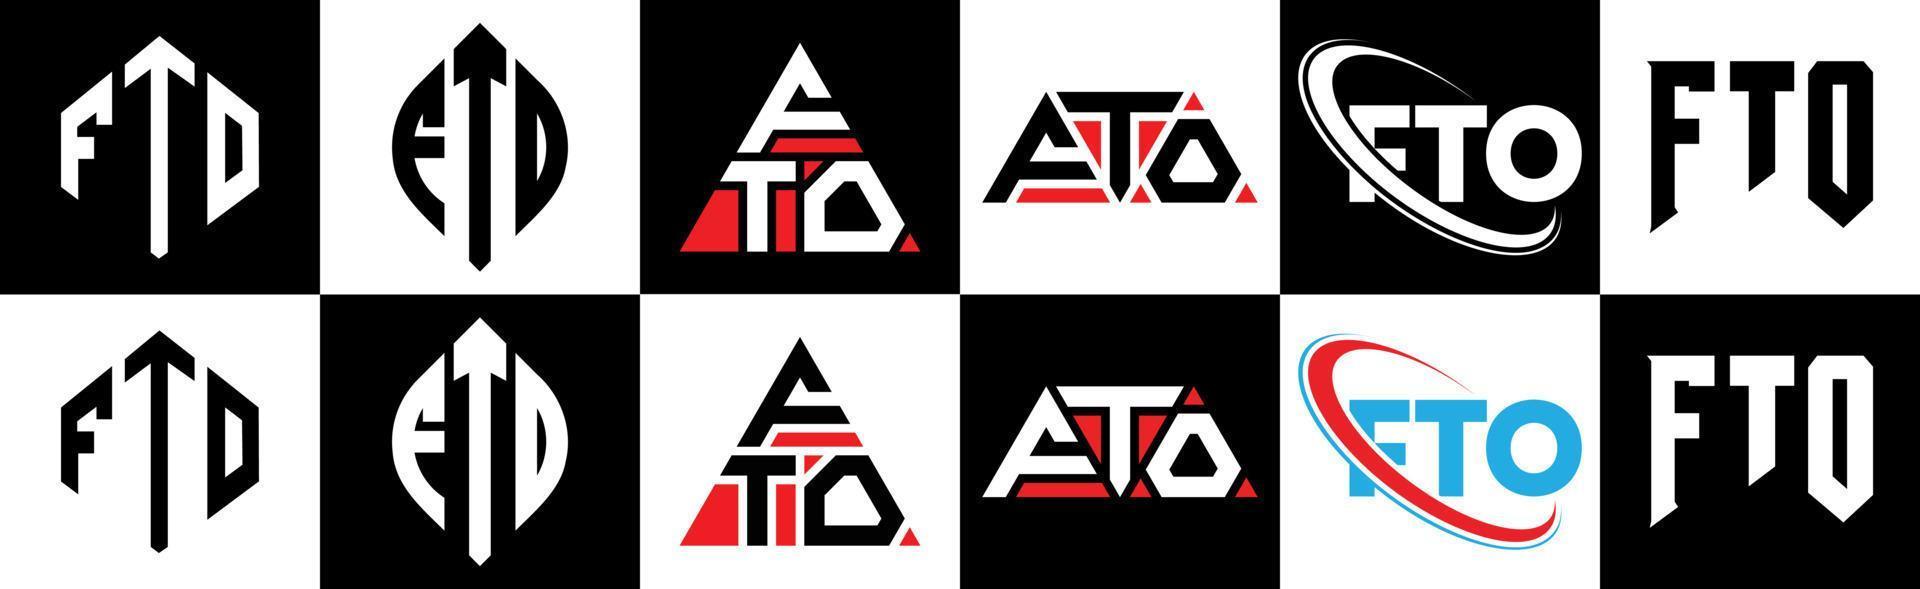 fto-Buchstaben-Logo-Design in sechs Stilen. fto Polygon, Kreis, Dreieck, Sechseck, flacher und einfacher Stil mit schwarz-weißem Buchstabenlogo in einer Zeichenfläche. fto minimalistisches und klassisches Logo vektor